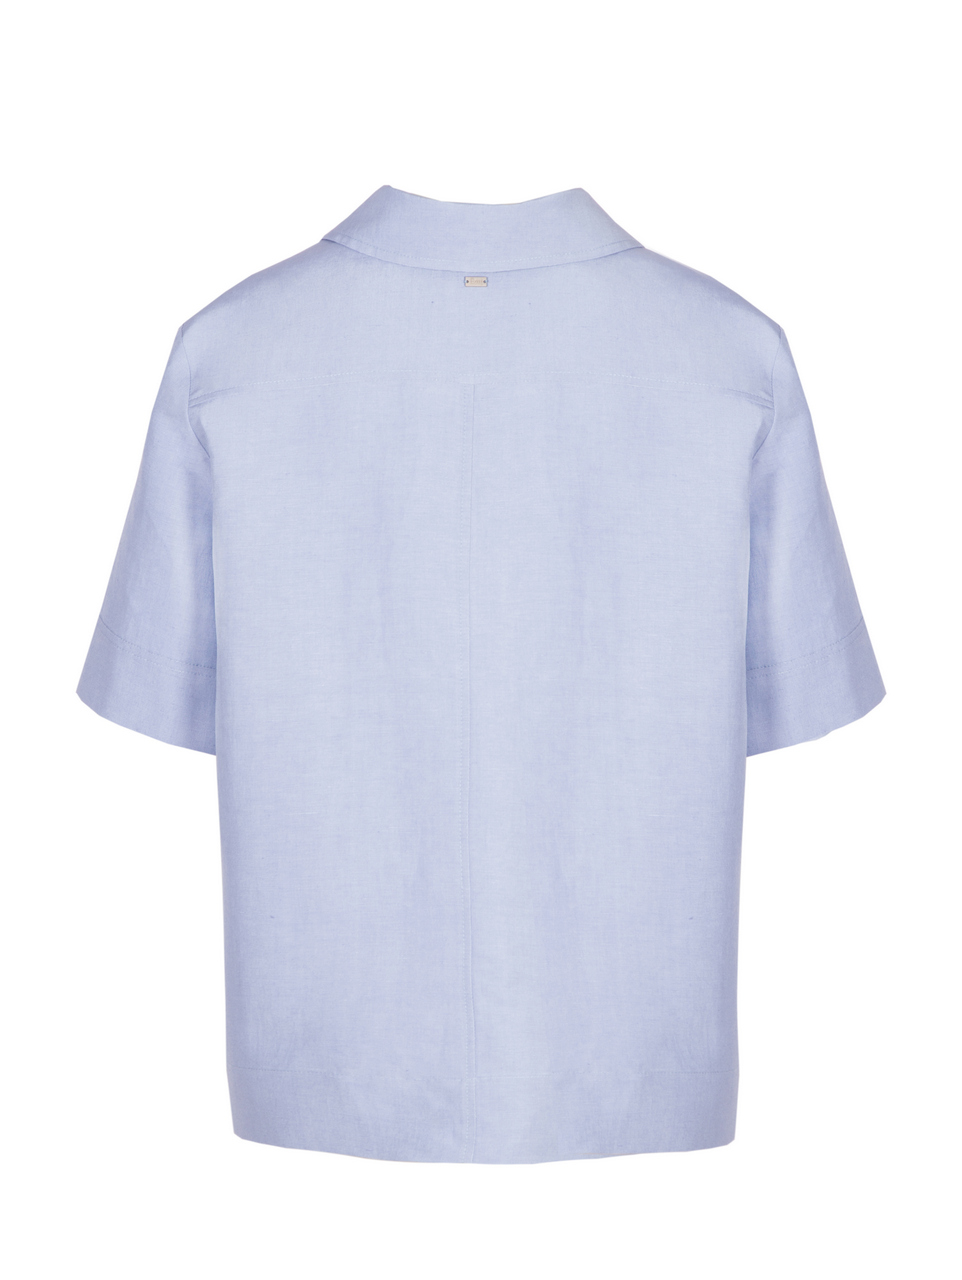 Рубашка-поло с коротким рукавом голубого цвета